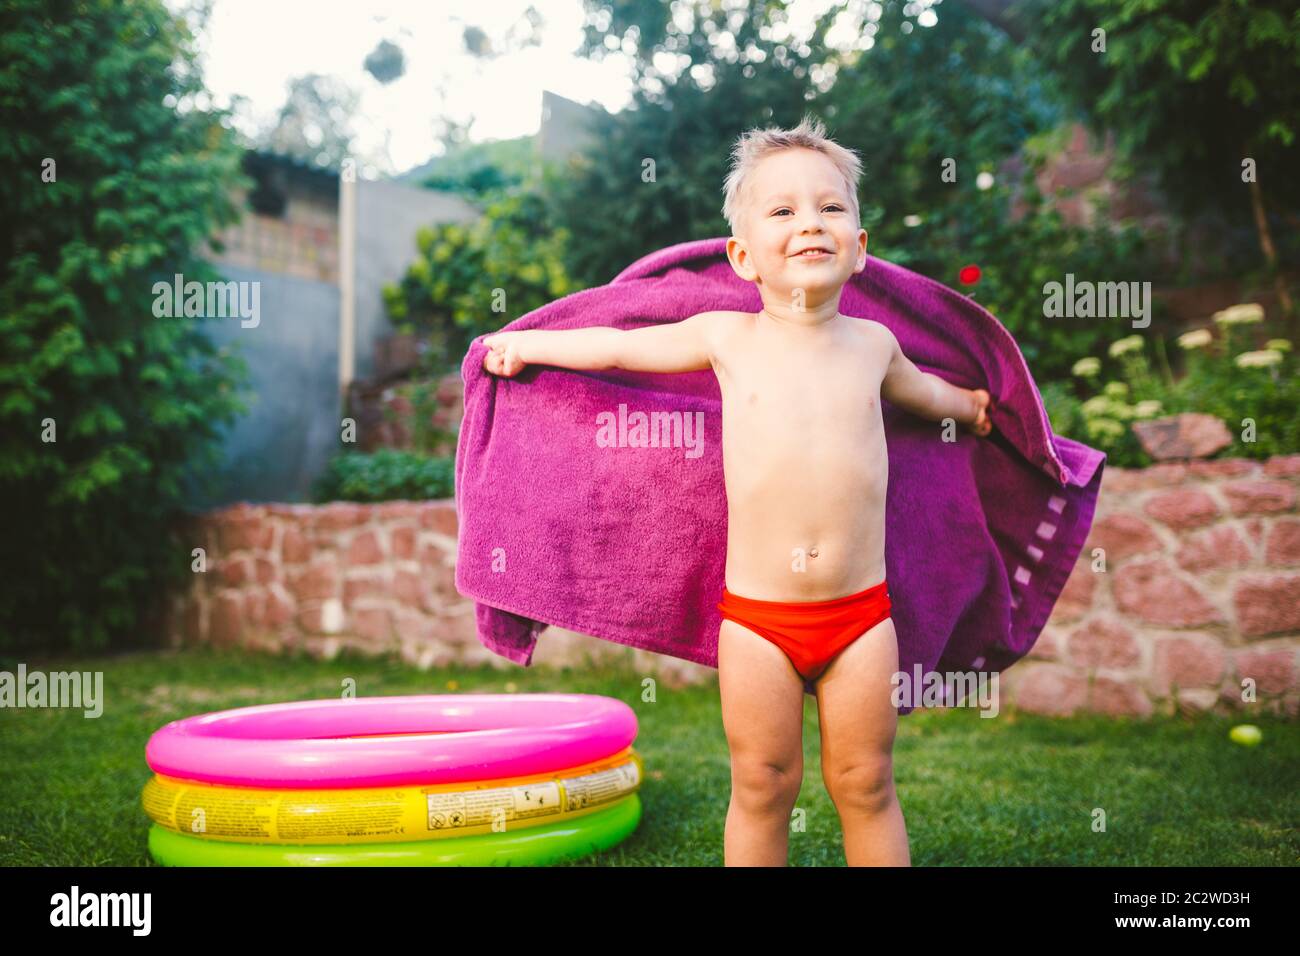 Sommerurlaub Thema. Ein kleiner 3 Jahre alter kaukasischer Junge, der im Hinterhof eines Hauses auf dem Gras in der Nähe eines runden Schlauchbootes spielt Stockfoto